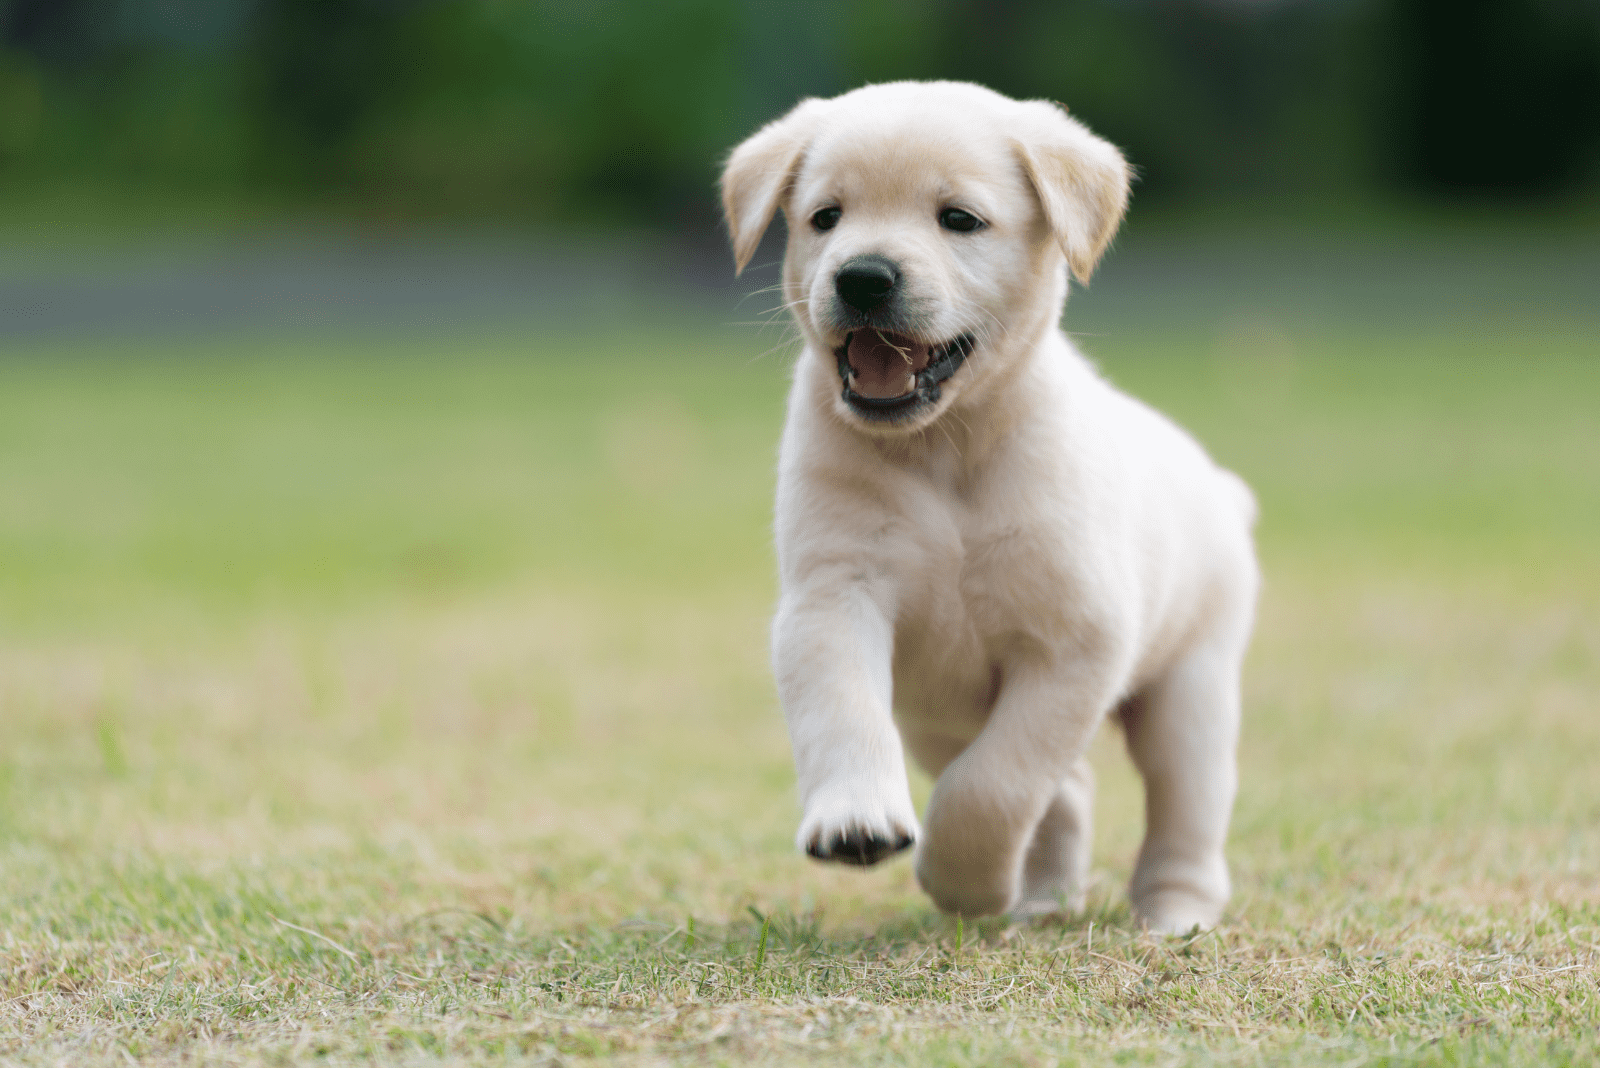 a Golden Retriever puppy runs across the field